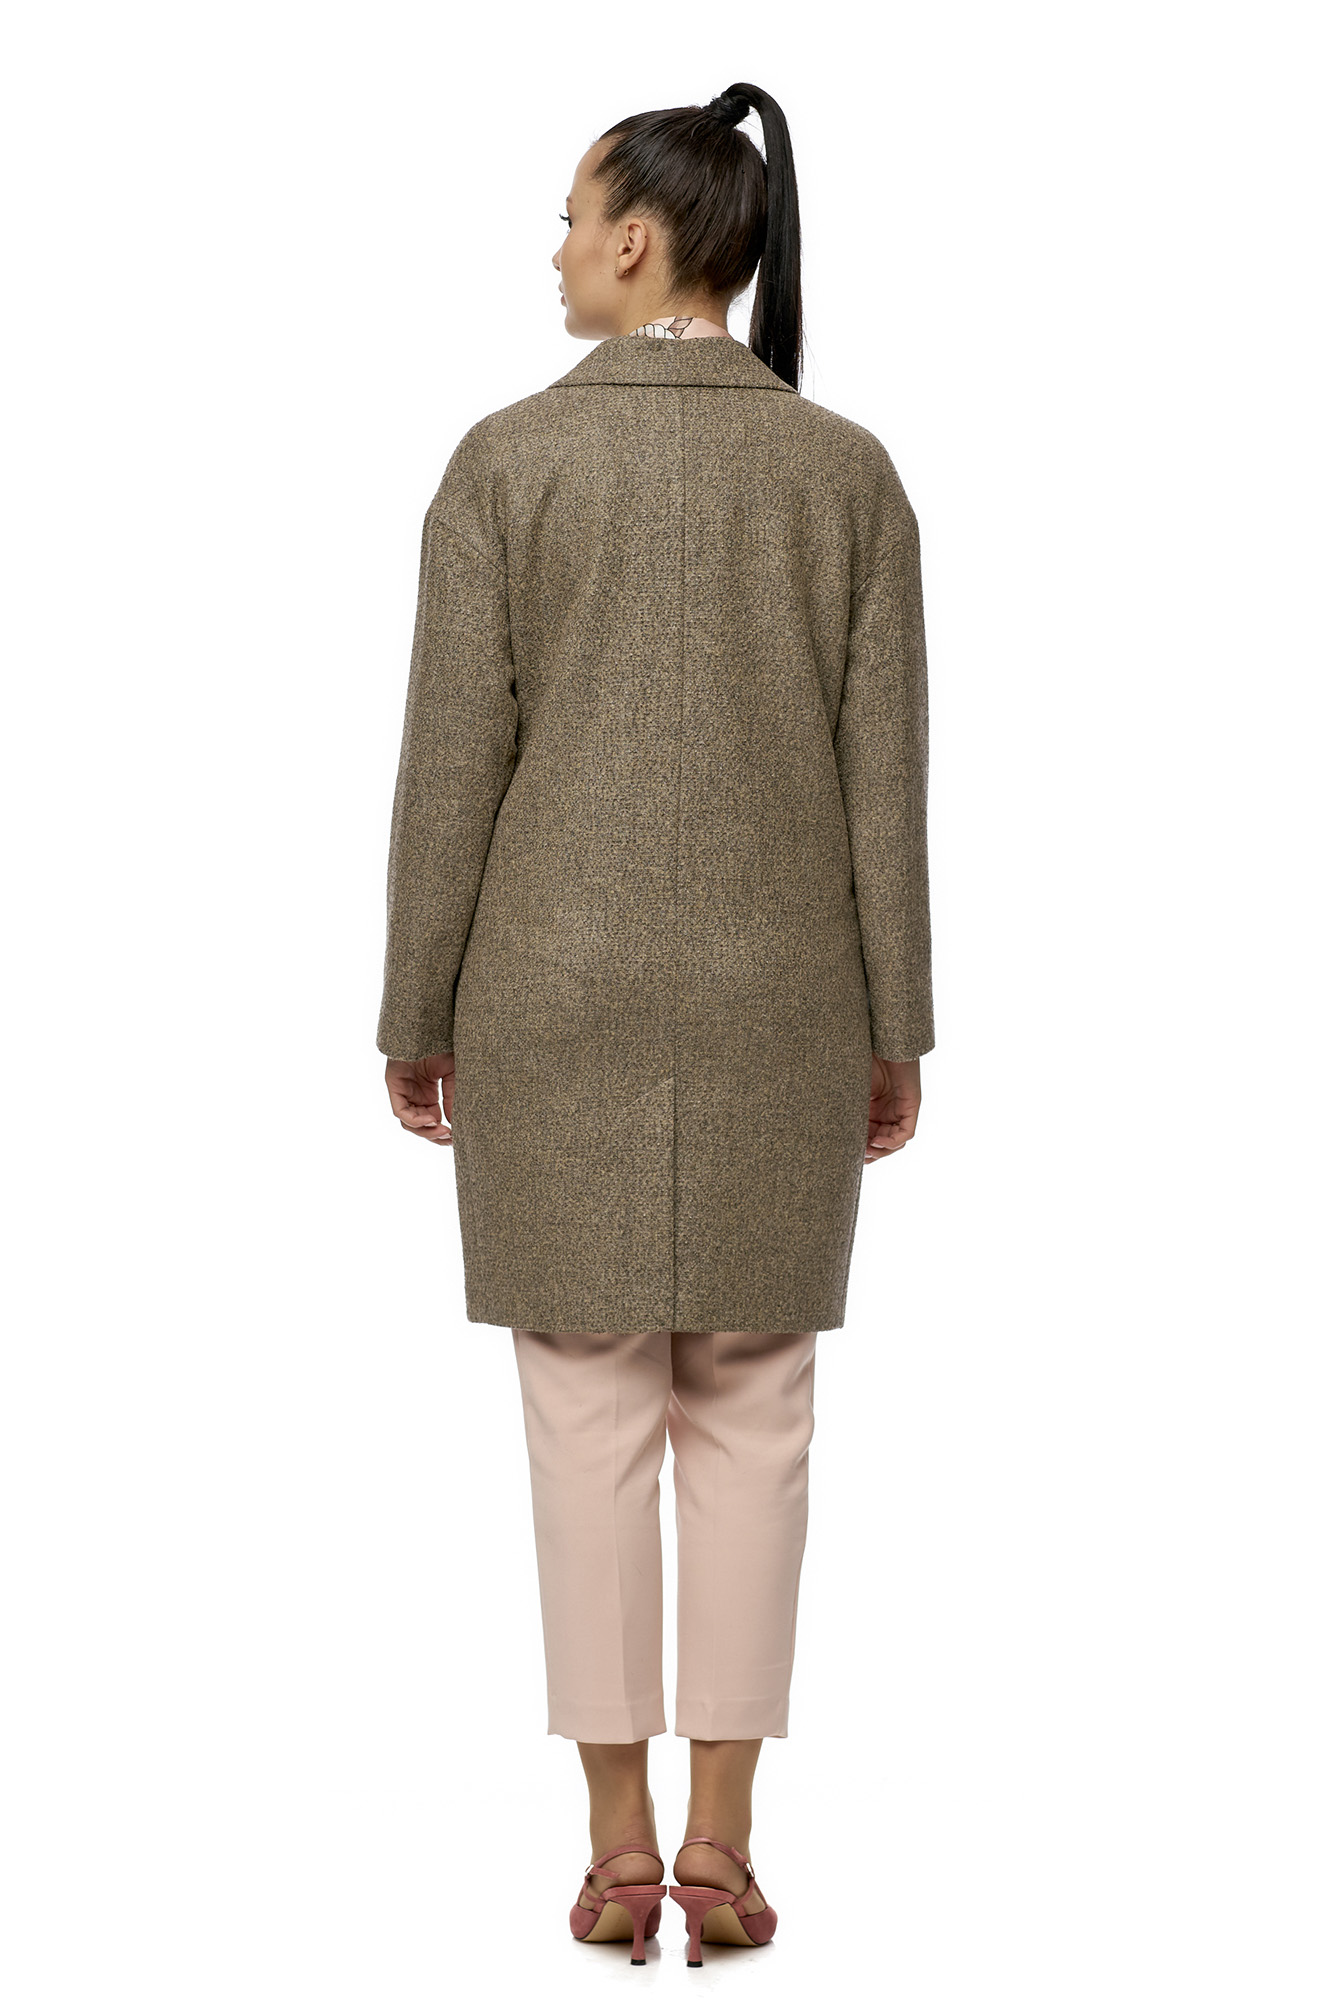 Женское пальто из текстиля с воротником 8007190-2